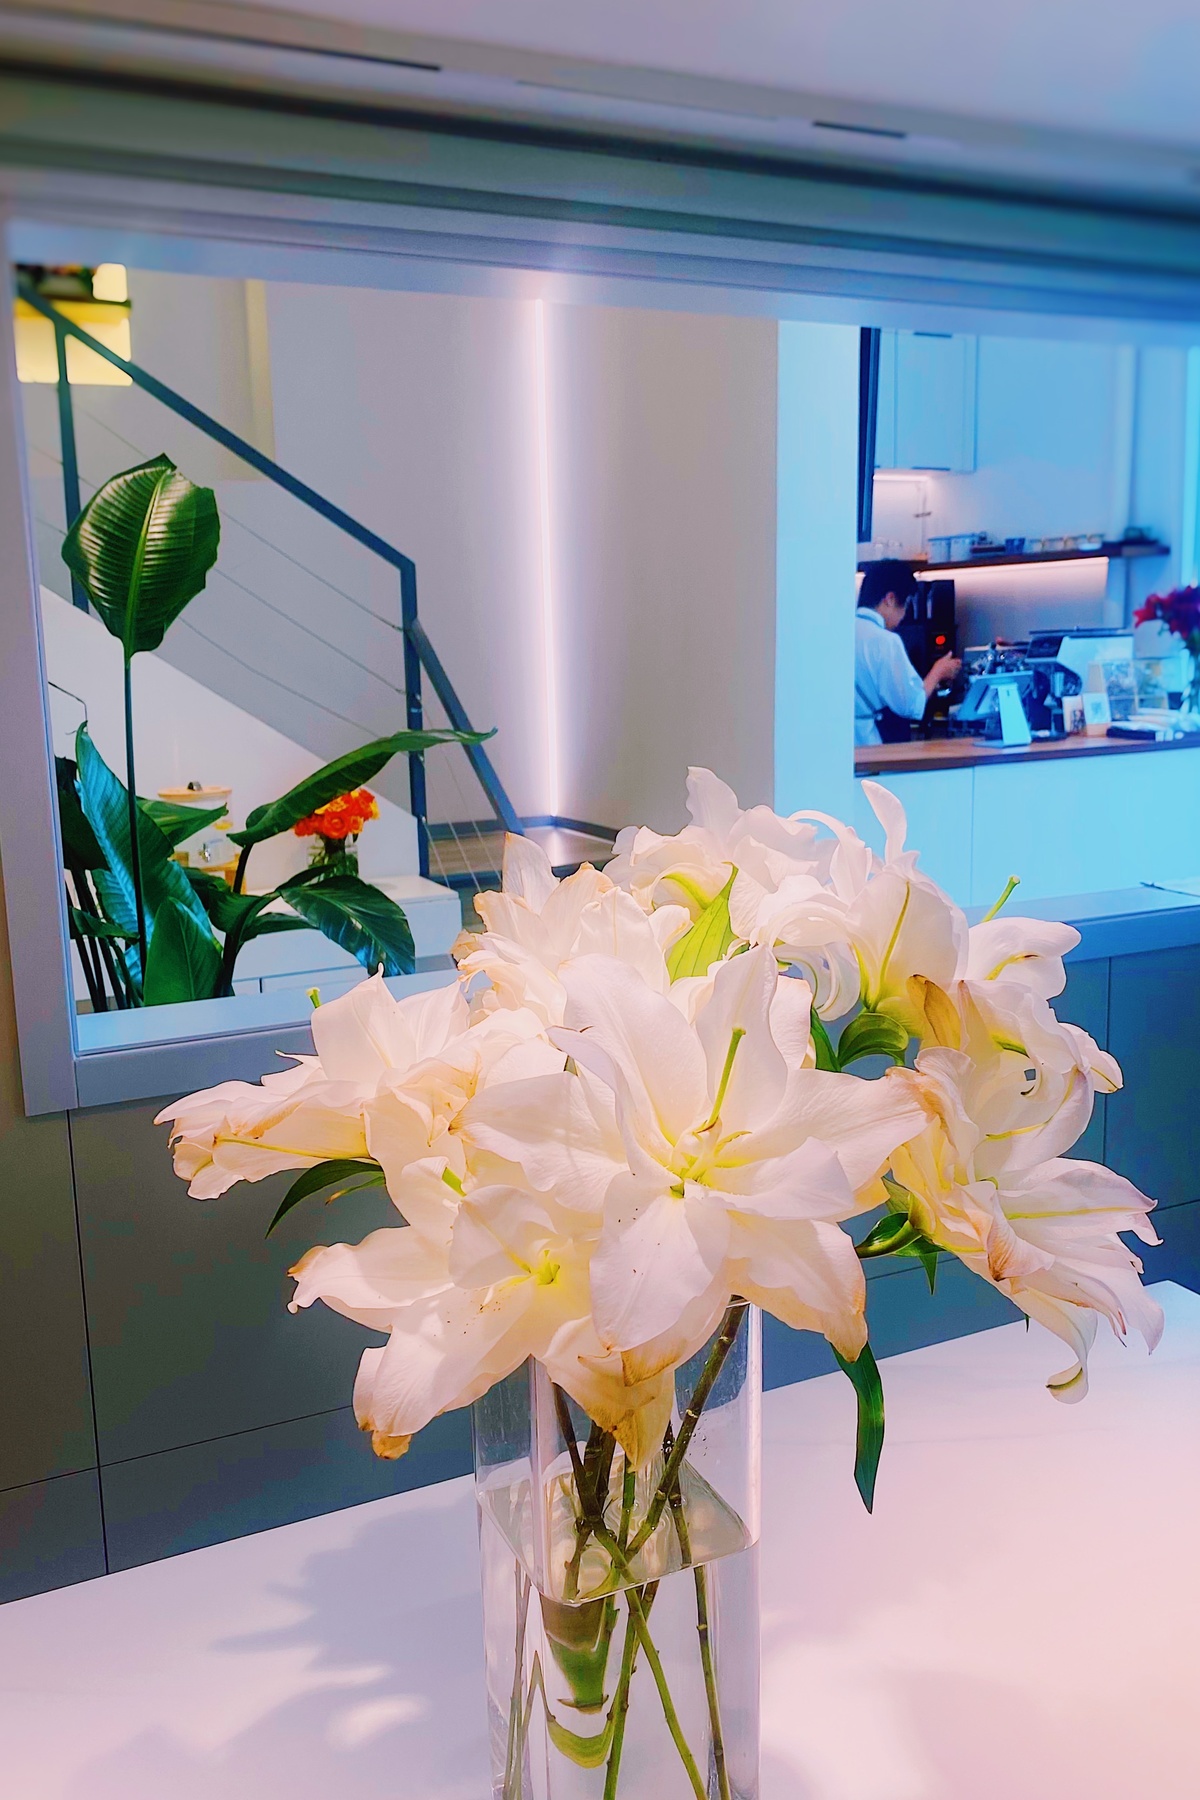 一个装满白色花朵的清晰花瓶 放在柜台上。